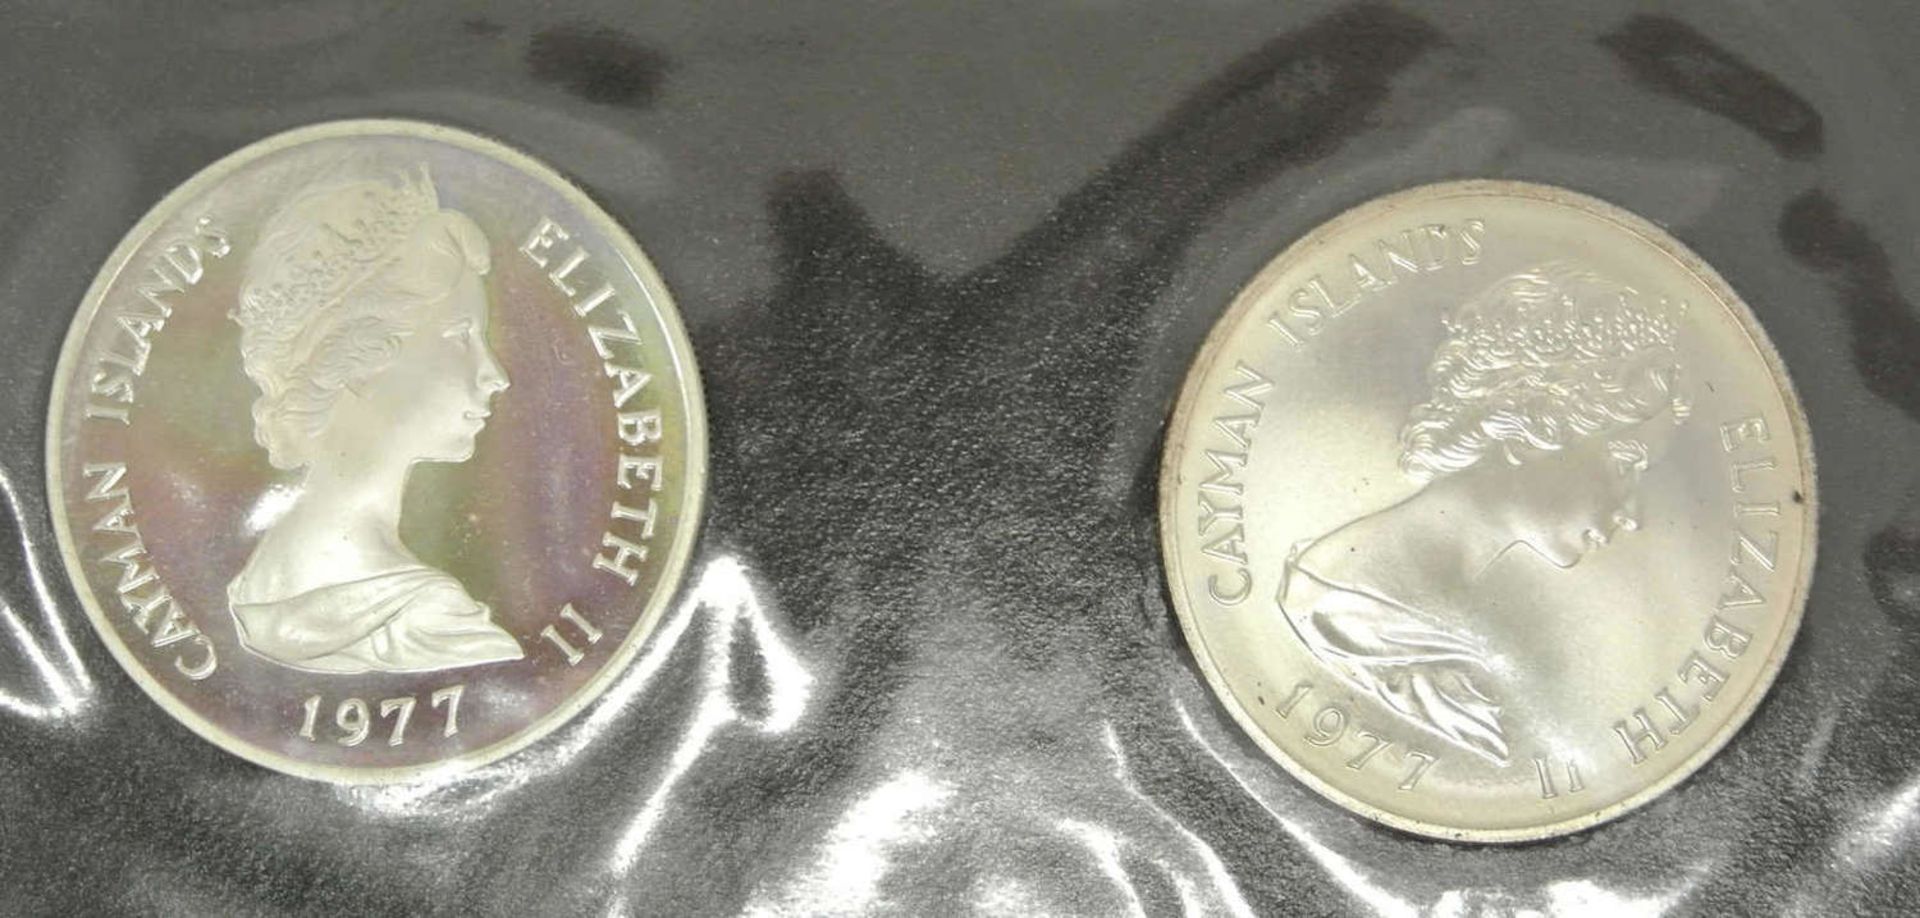 Cayman-Inseln 1977, dabei 2x 25 Dollar, Silber, einmal in PP in Original Blister, kleine Auflage - Bild 2 aus 3